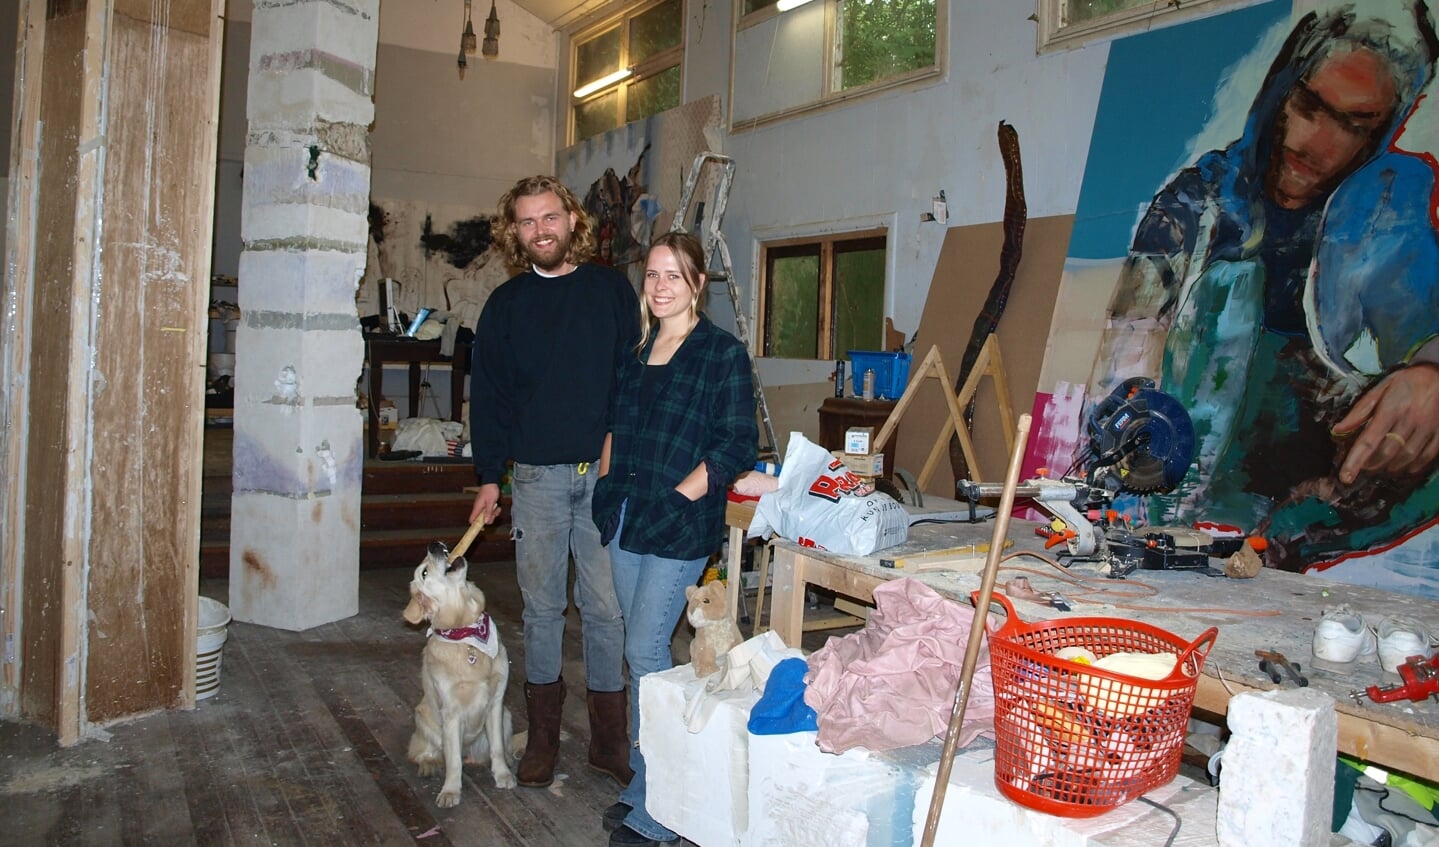 Kirsten Geerts en Joris Strouken met Flip.in hun atelier in de voormalige kapel op de buitenplaats Beresteyn. Het schilderij rechts is van Joris en de zuil links is het werk van Kirsten. Foto: Vsk